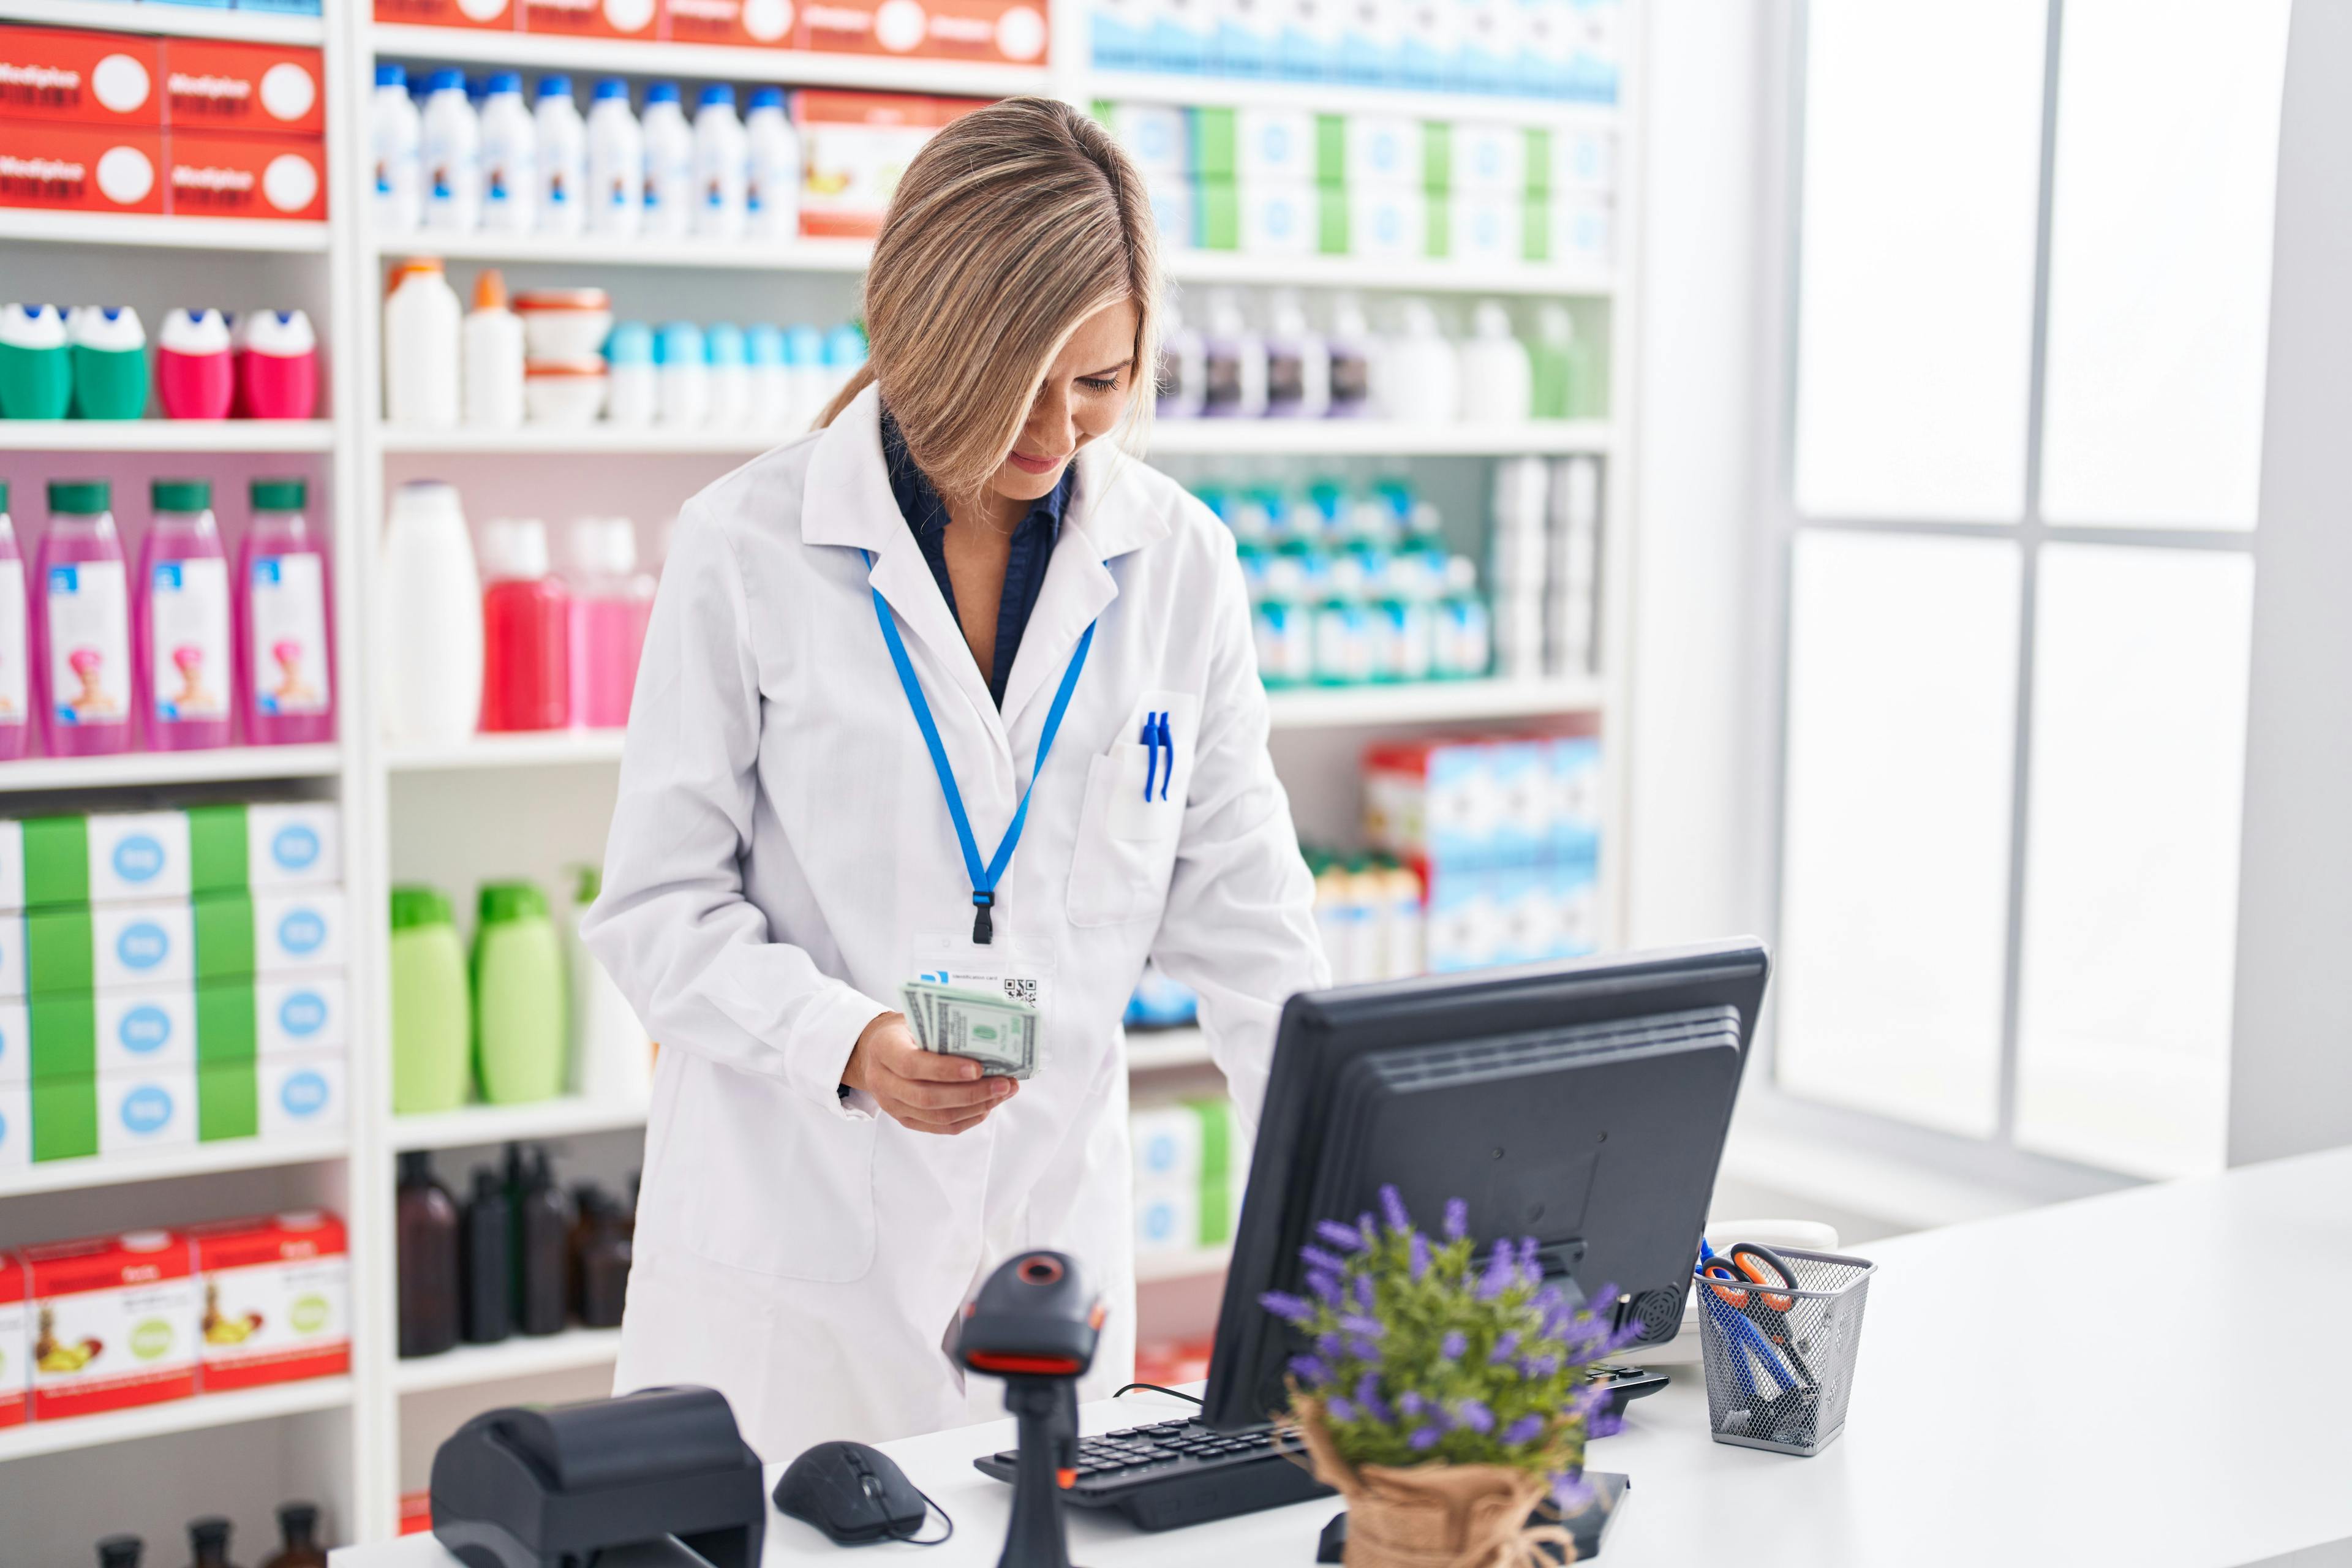 Pharmacist putting money into cash register / Krakenimages - stock.adobe.com